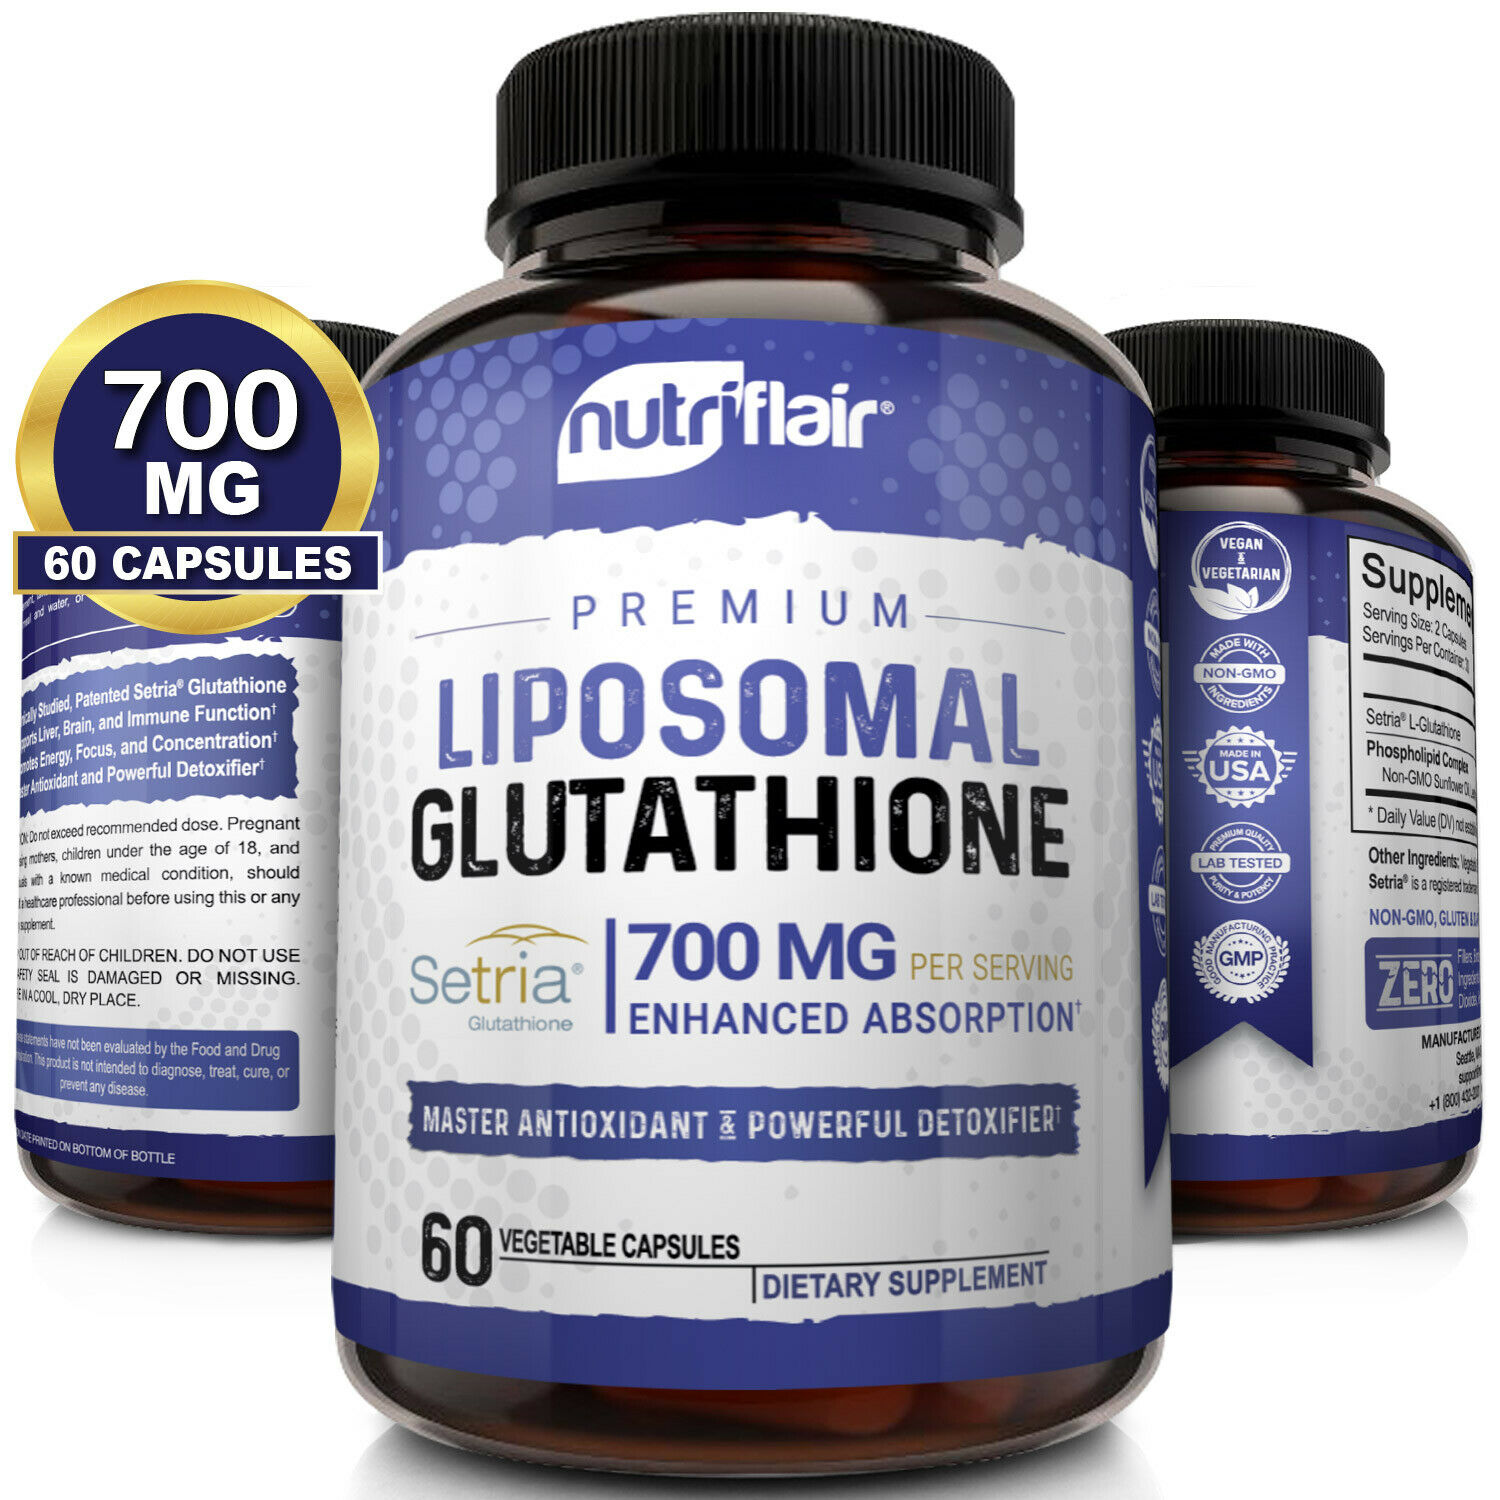 Nutriflair Setria Liposomal Glutathione 700mg - Pure Reduced L-glutathione Detox